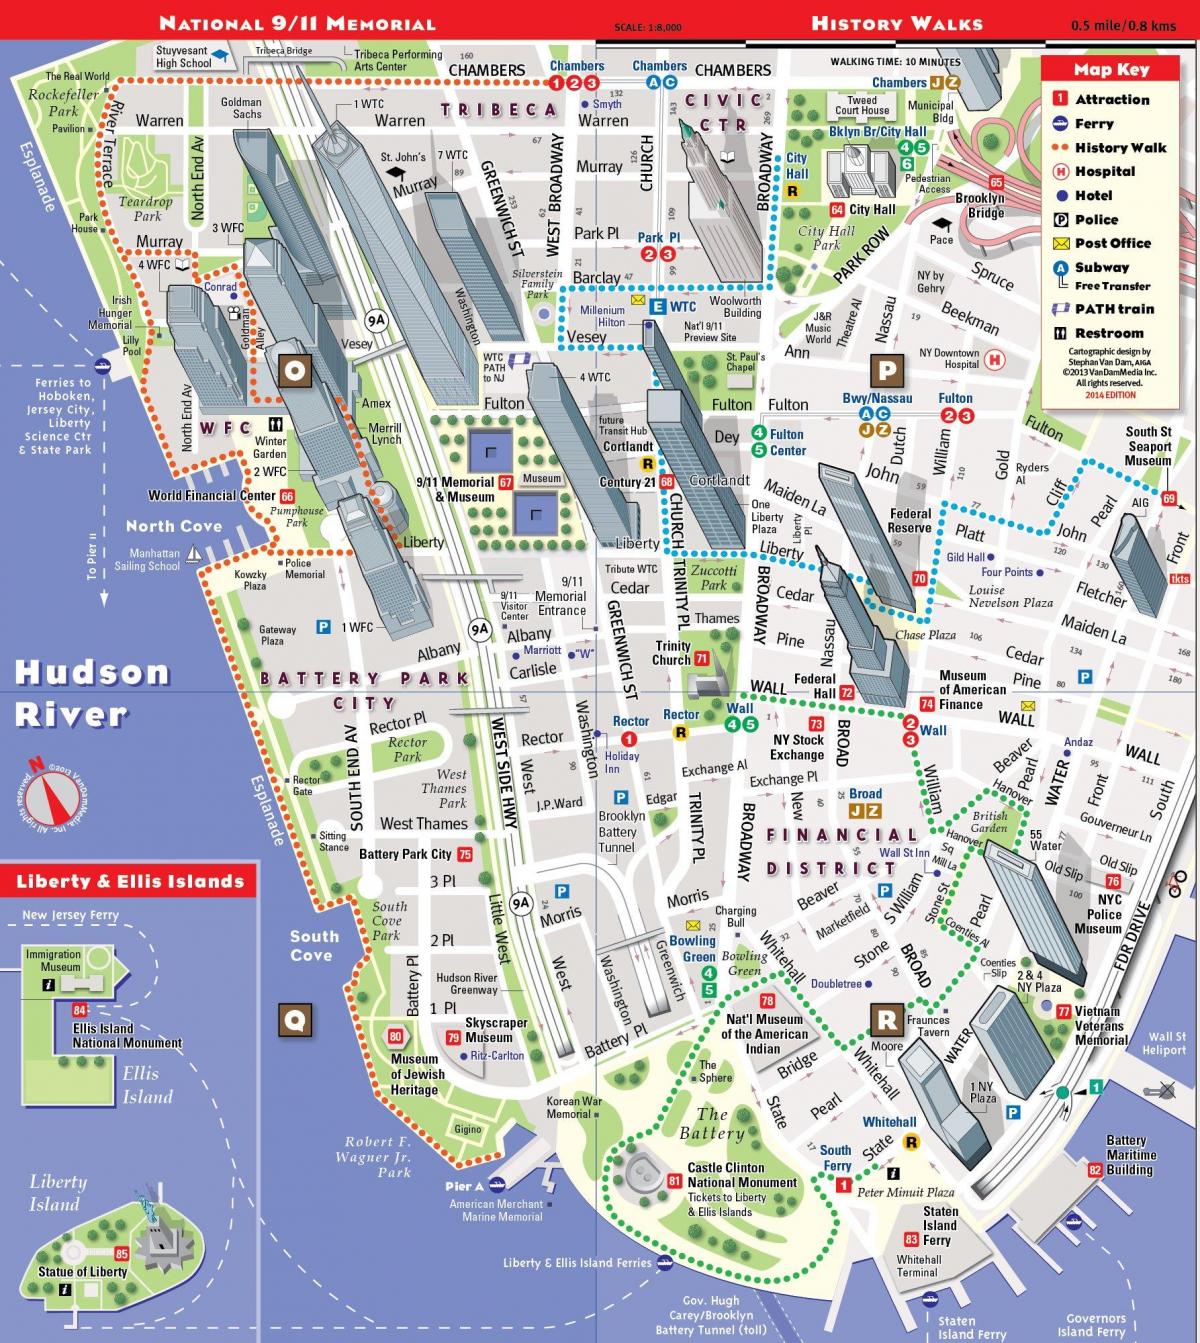 ստորեւ զբոսաշրջային քարտեզը Մանհեթենի